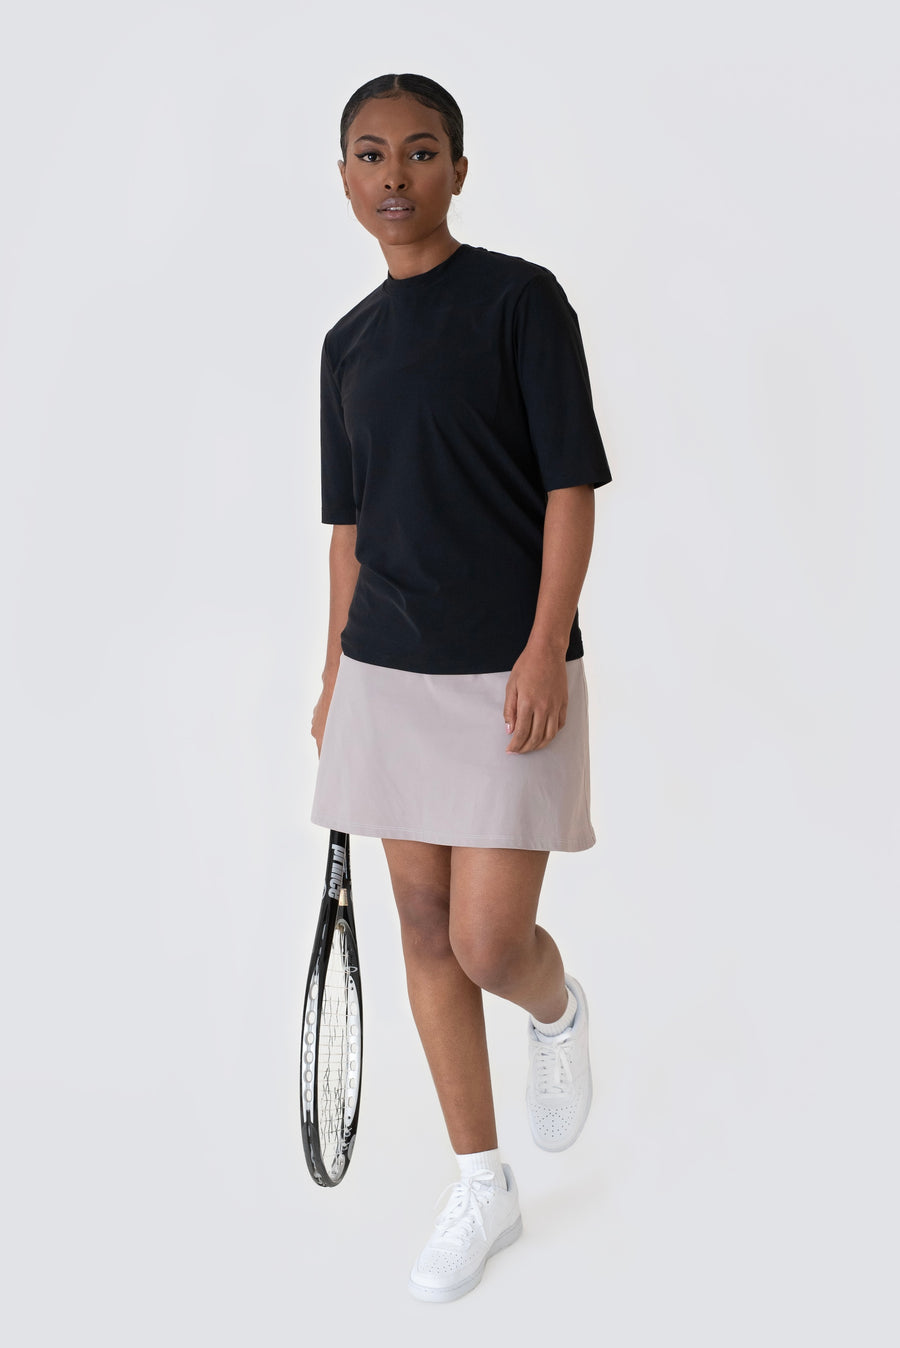  Padelkjol och tenniskjol designad med en lätt A-linjeformad passform, hög midja och inbyggda innershorts med en padelbollsficka på benet.